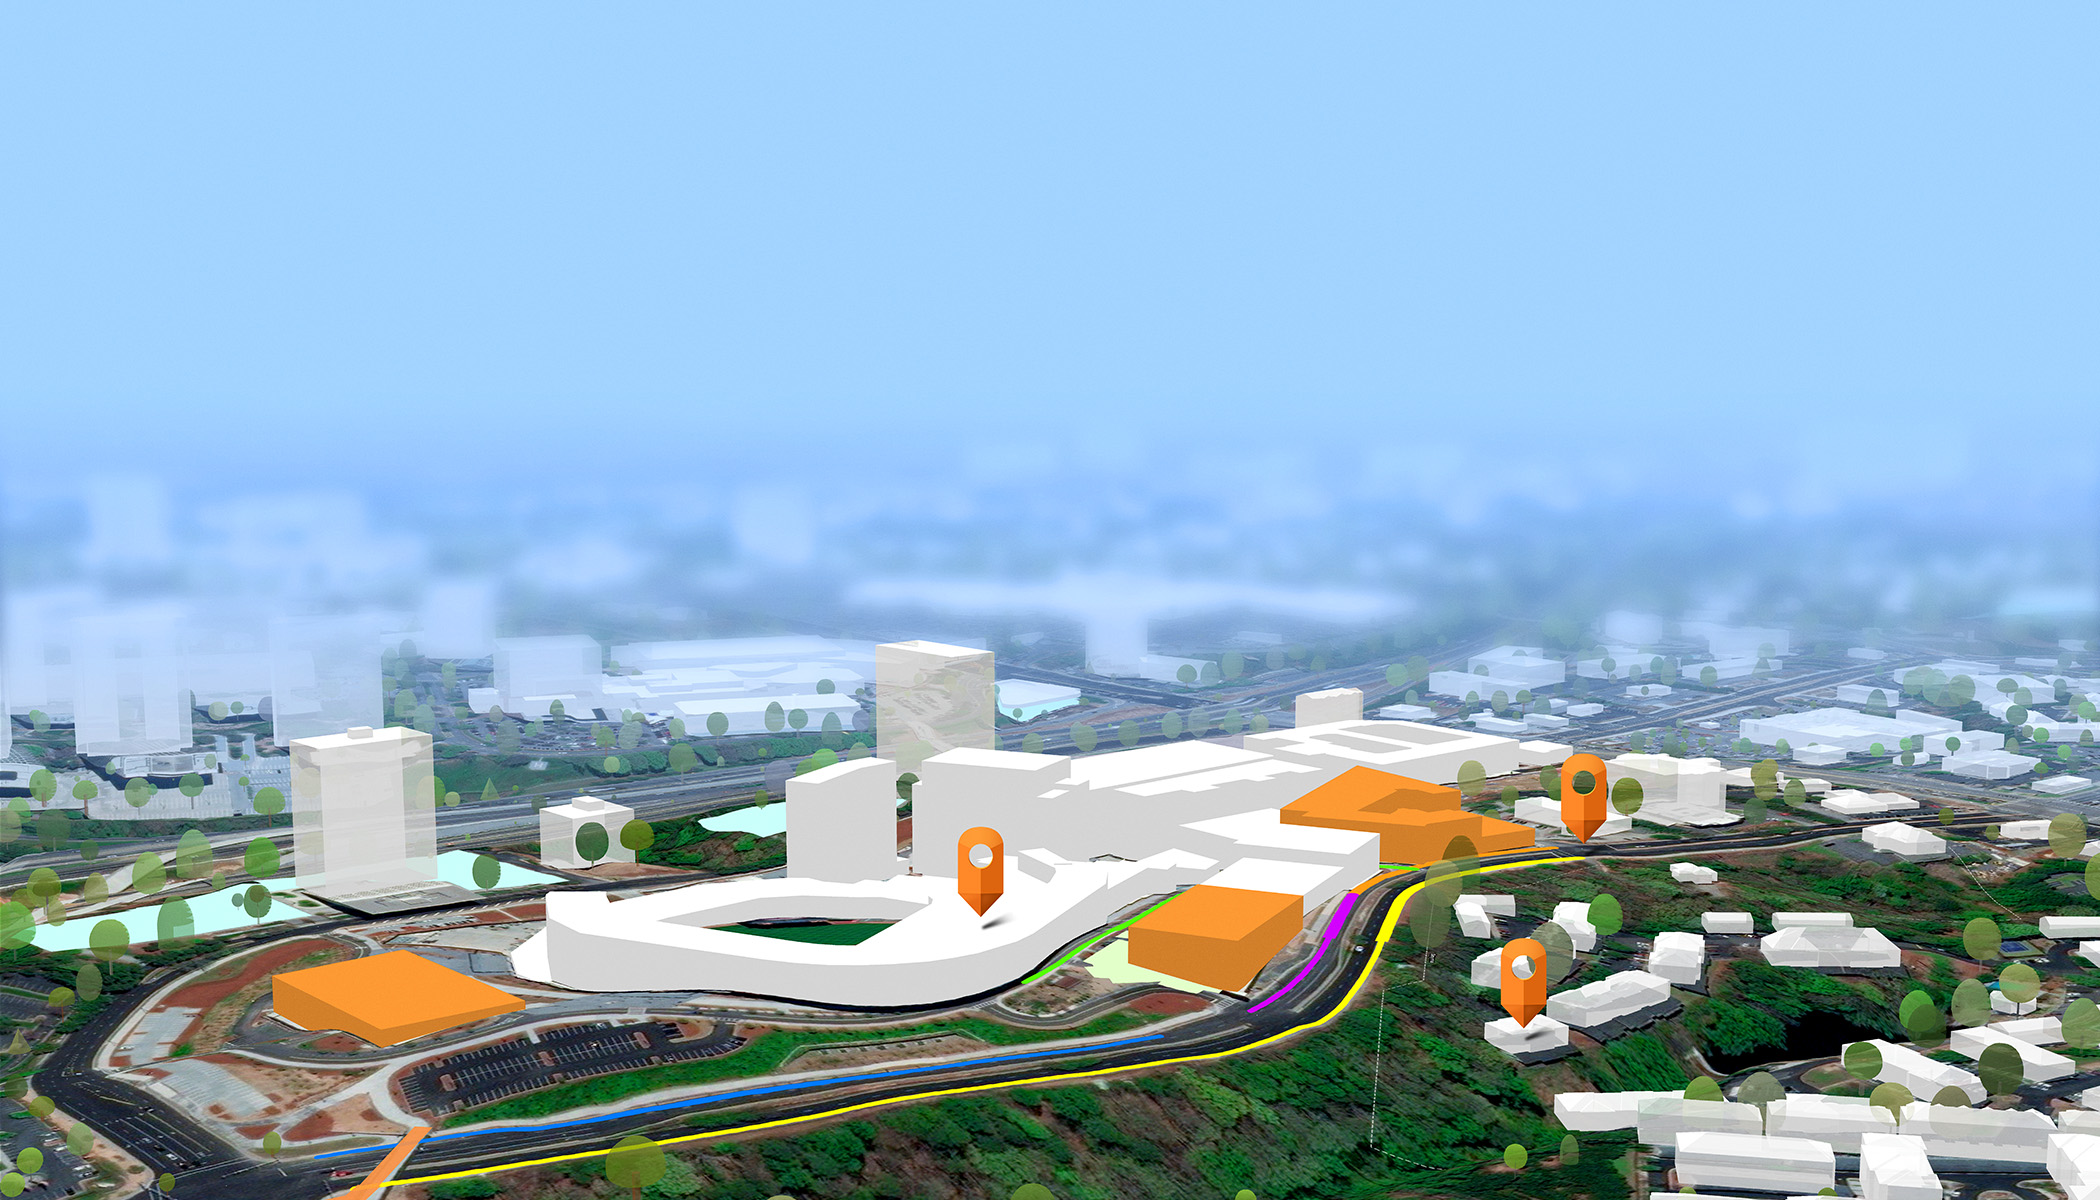 城市的 3D 设计，背景模糊，前景显示白色和橙色建筑物以及三个橙色导航图钉图标